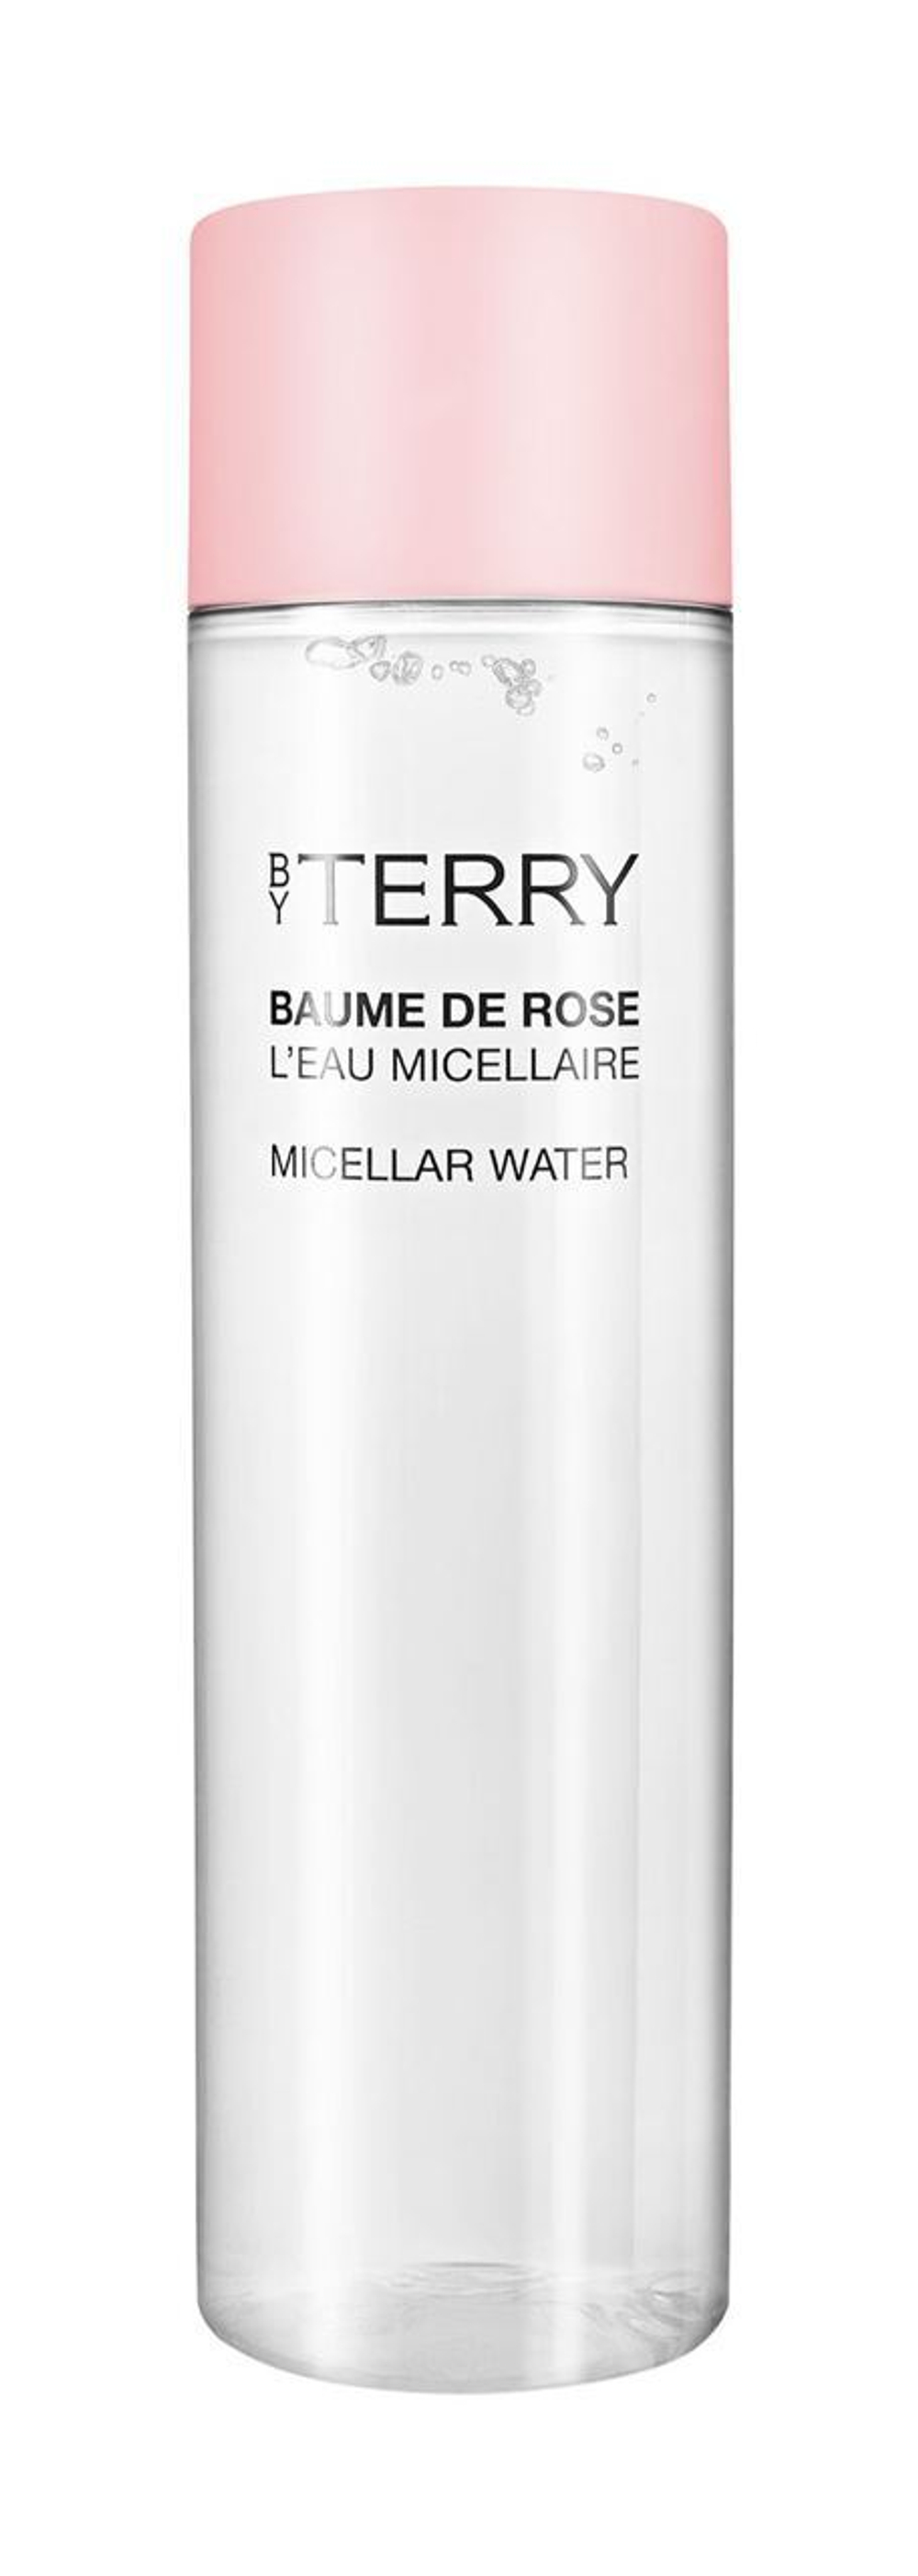 BY TERRY Очищающая мицеллярная вода для снятия макияжа Micellar Water